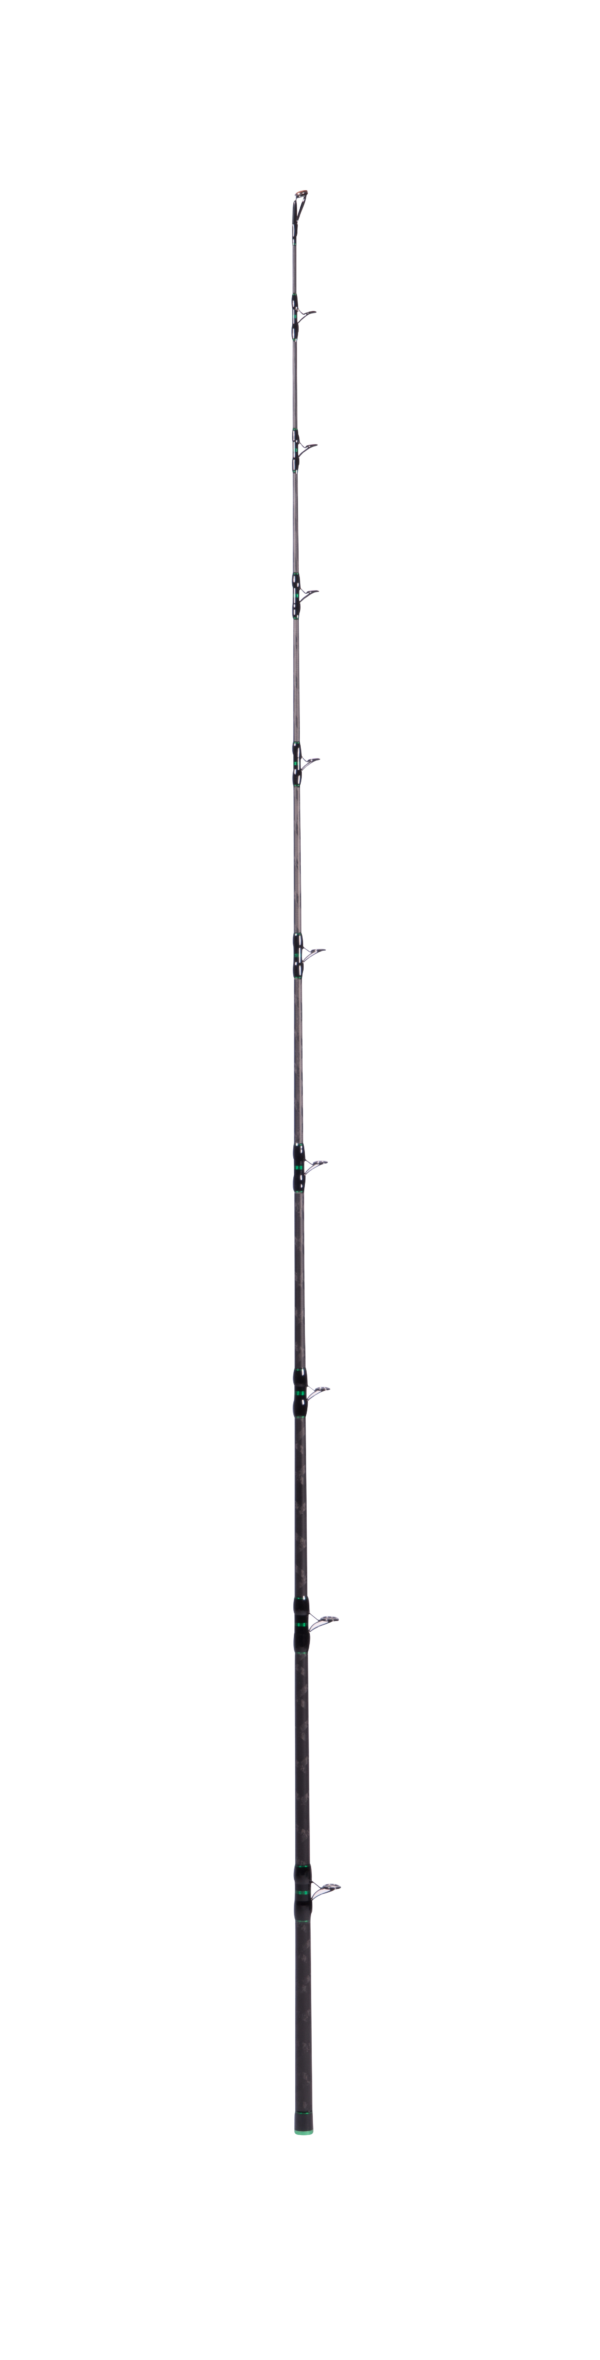 Zeck Pro-Cat sensi-long 320cm |350g